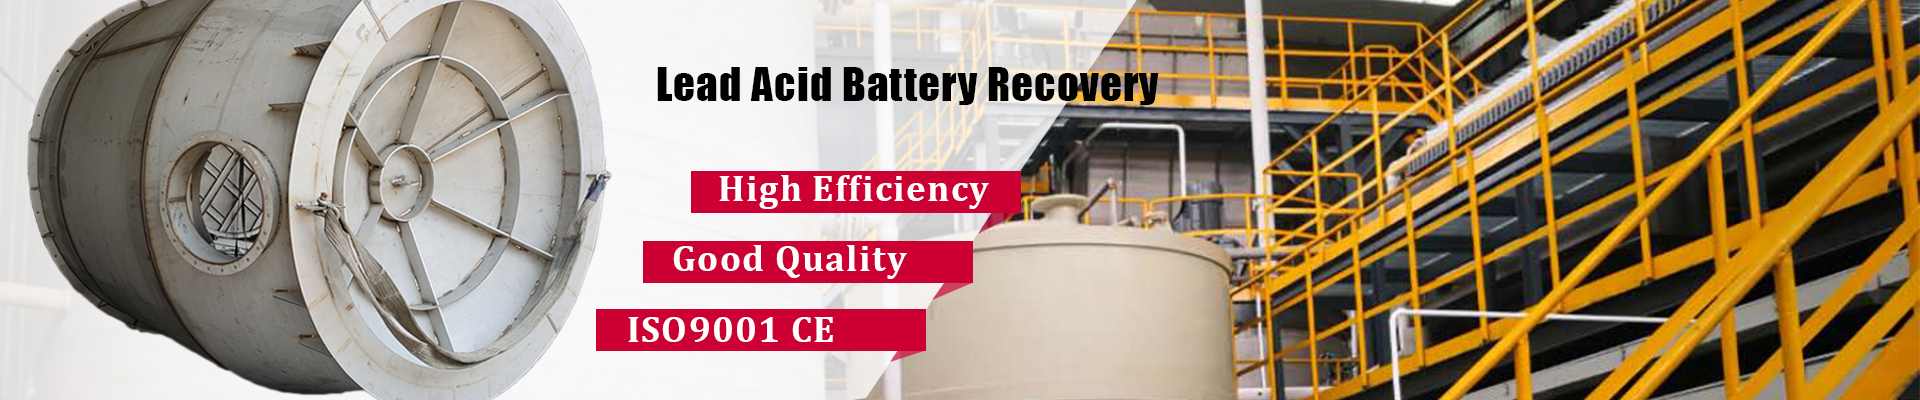 Sistema de recuperação e regeneração de baterias de chumbo-ácido